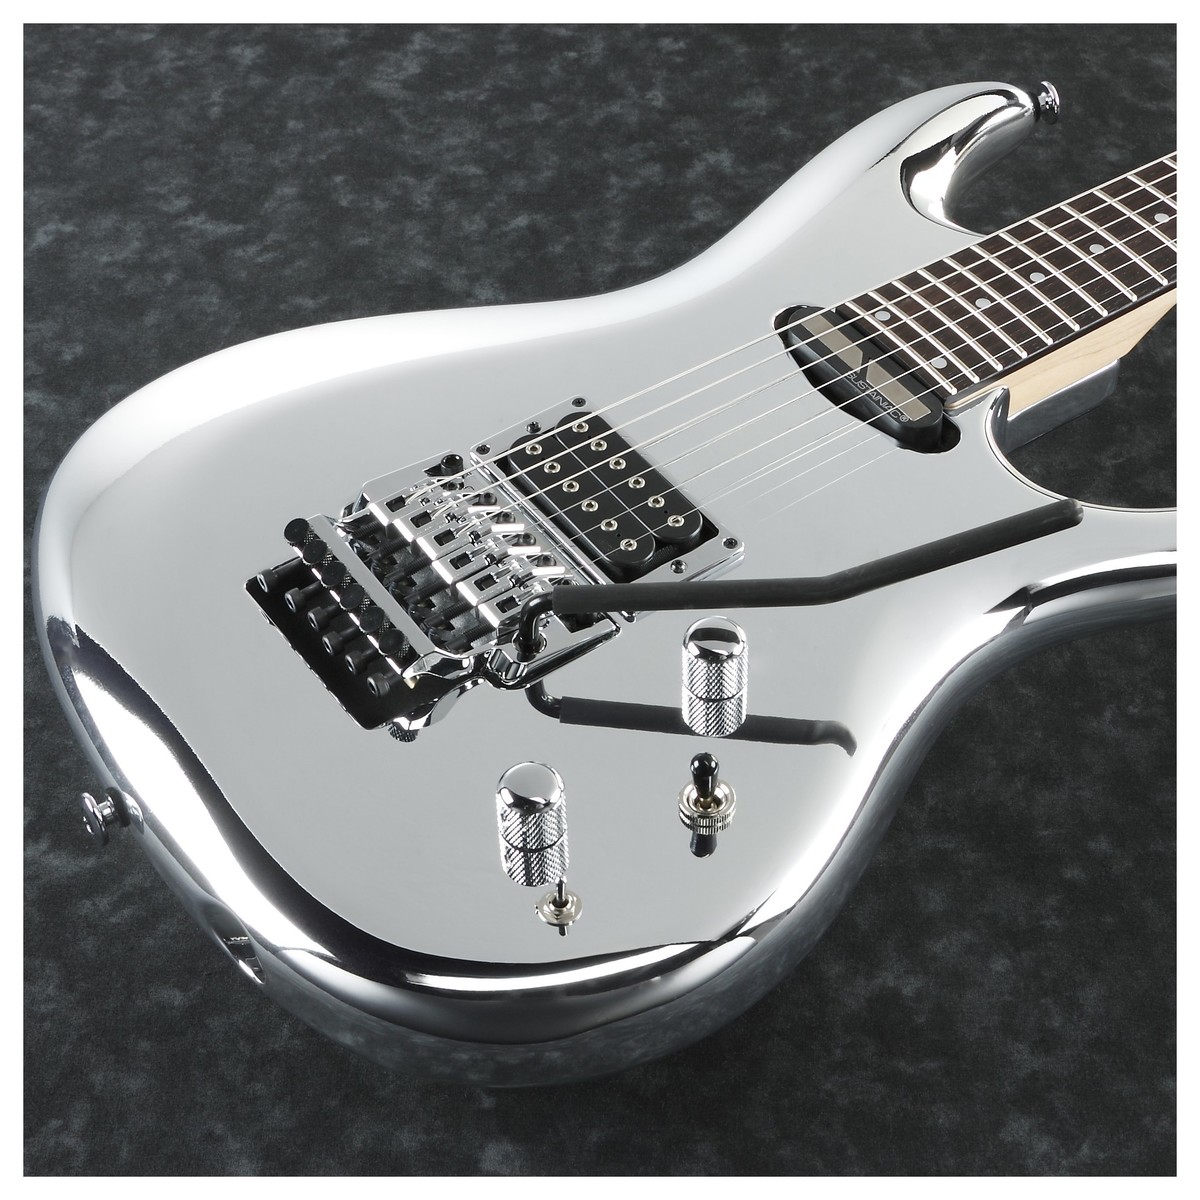 Ibanez Joe Satriani Js1cr Signature Japon H Sustainiac Fr Rw - Chrome Boy - Guitarra eléctrica de doble corte. - Variation 1